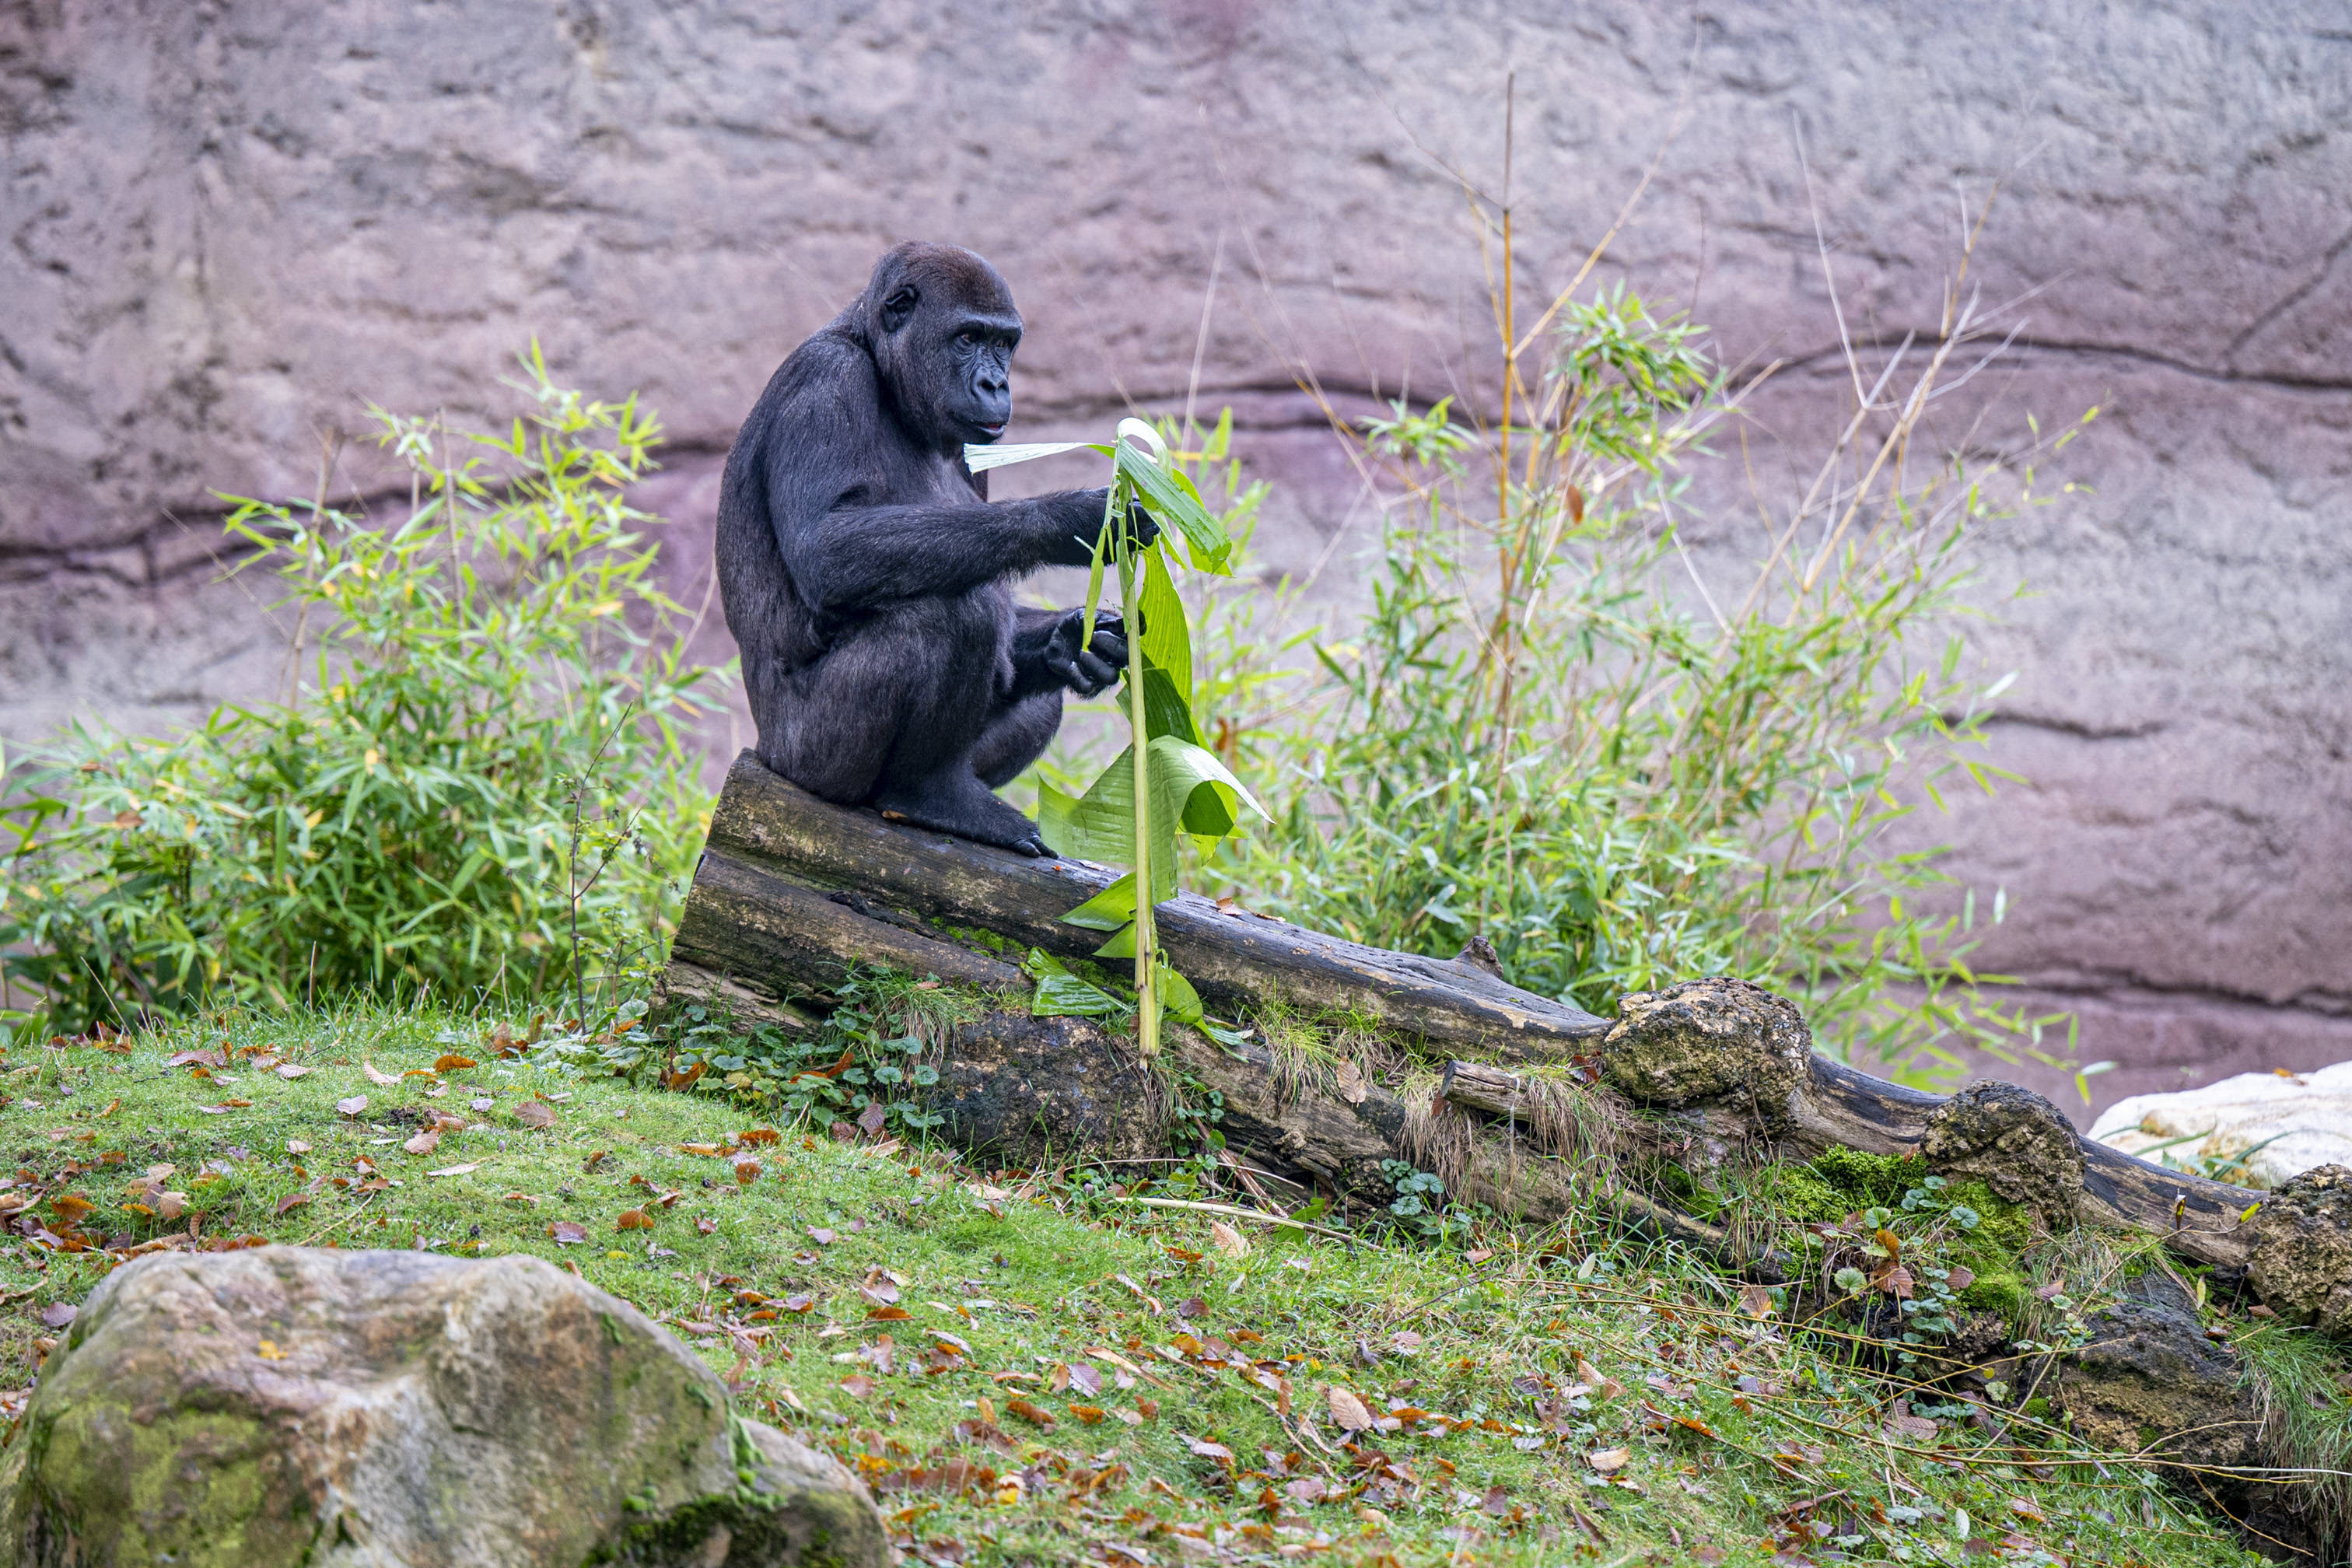 Leölnék az európai állatkertekben tartott hím gorillák egy részét, mert túl sok van belőlük